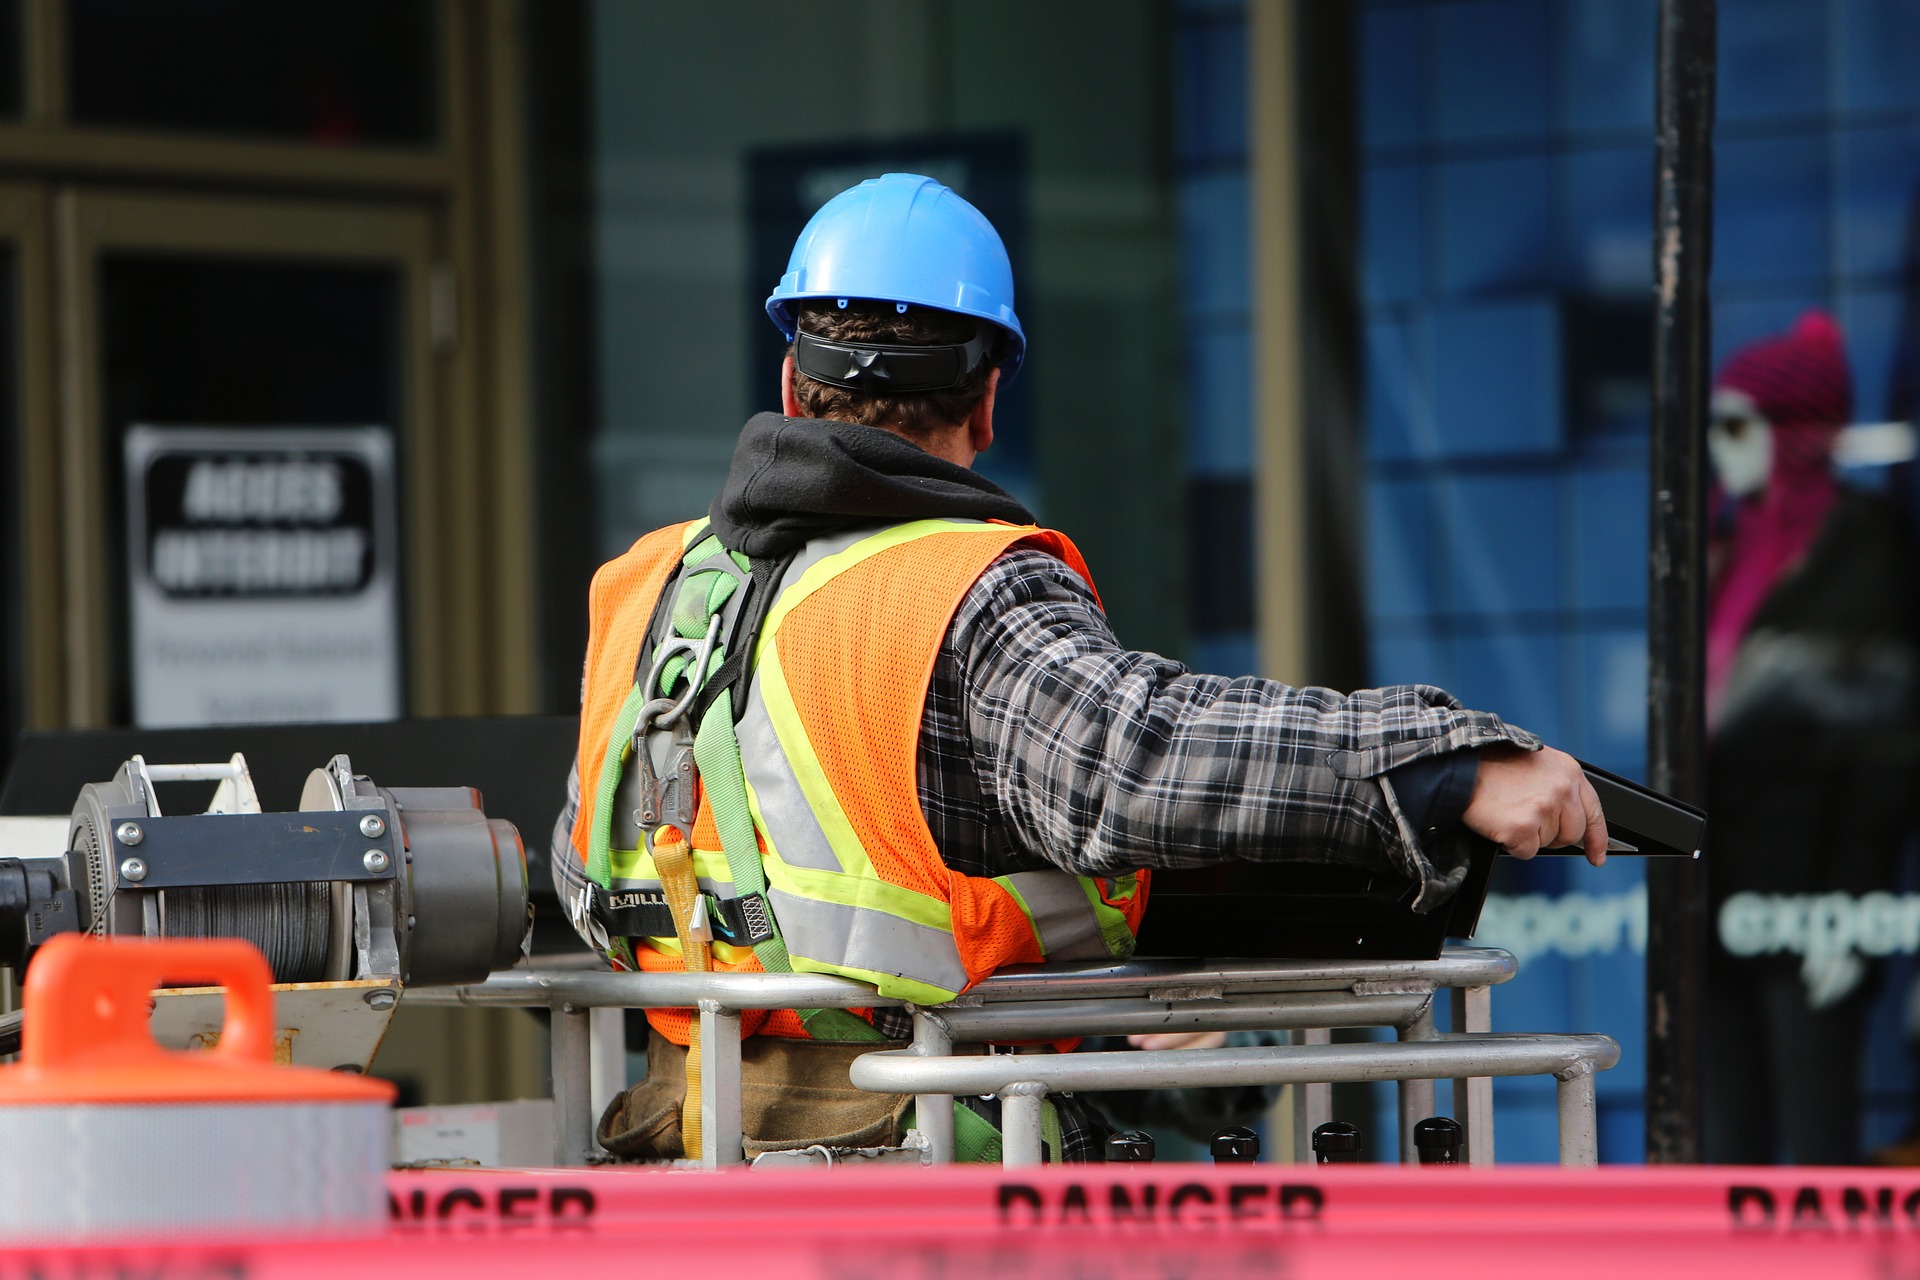 Dohled nad stavebními procesy je jedním z aspektů bezpečnosti staveb, který nesmí být nikdy opomíjen.